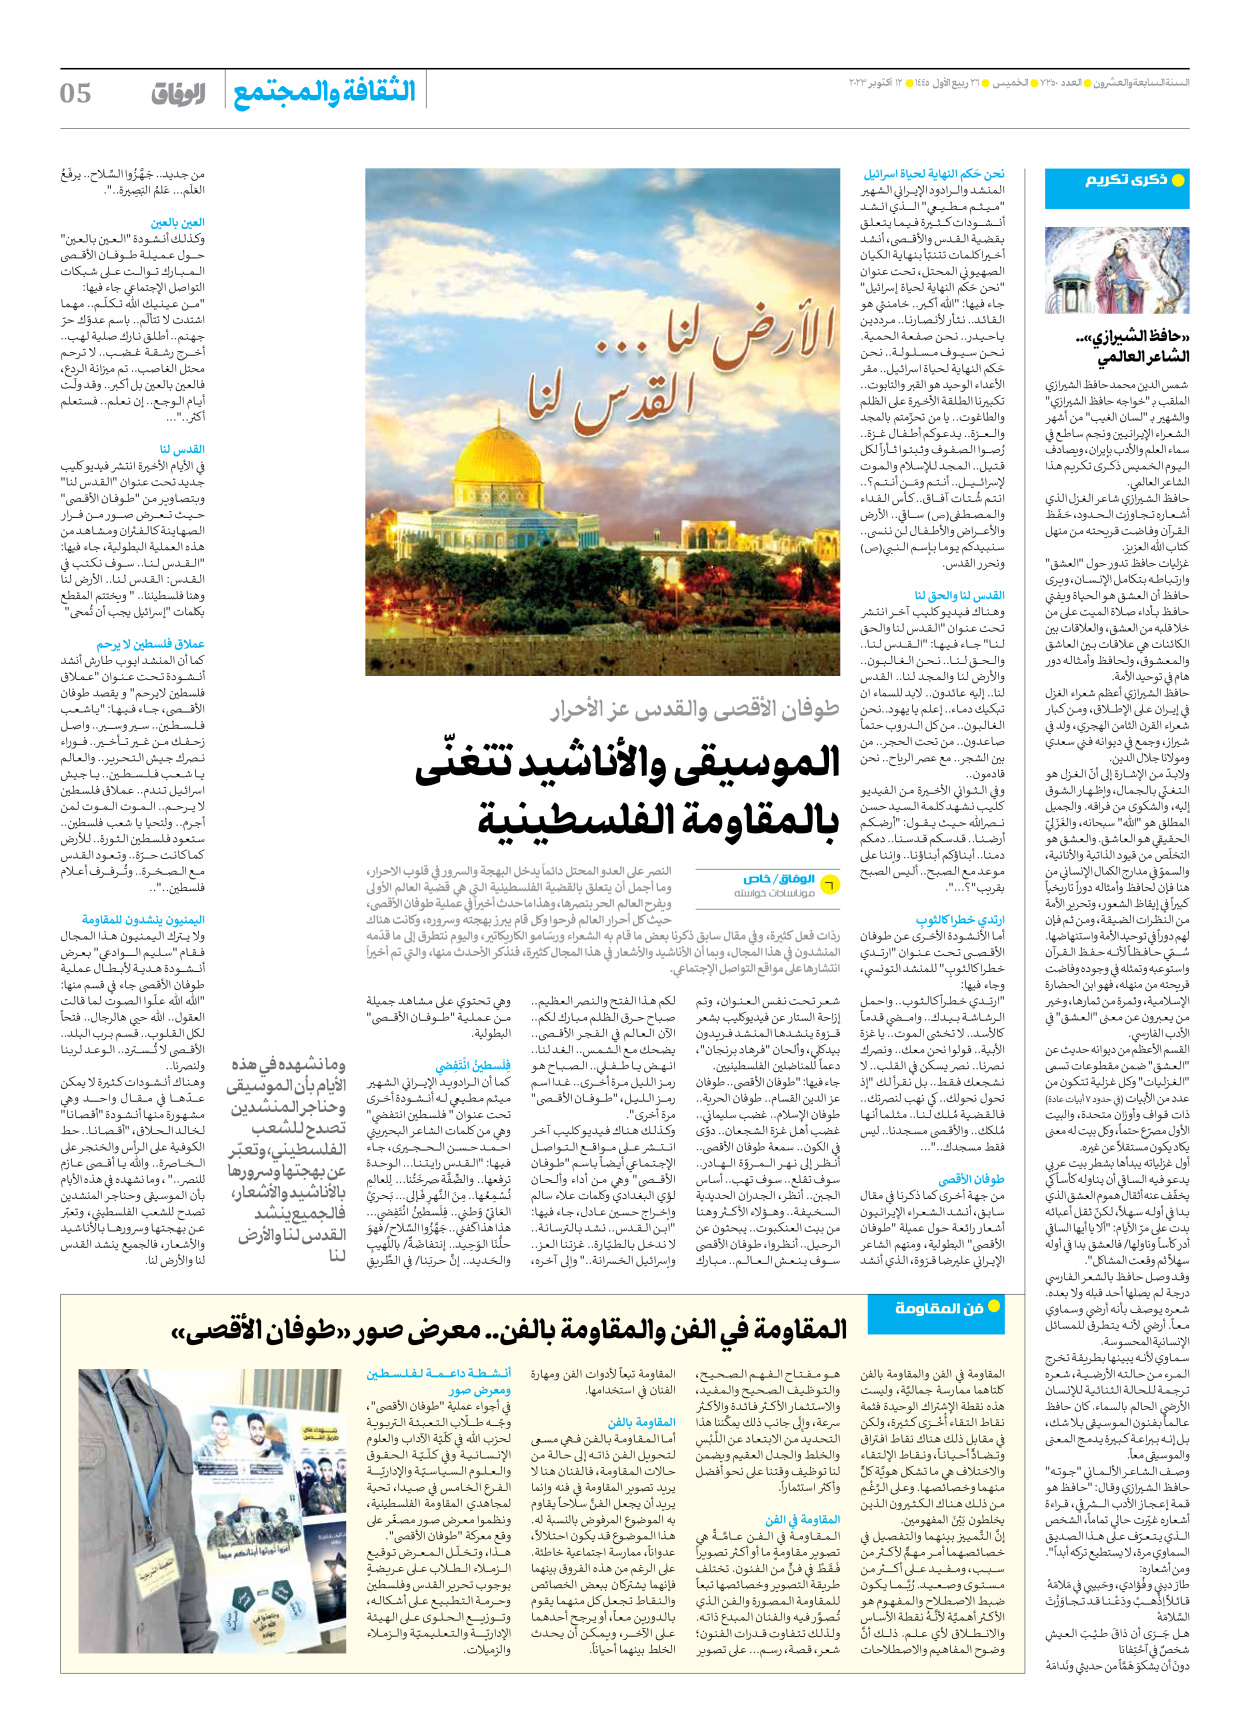 صحیفة ایران الدولیة الوفاق - العدد سبعة آلاف وثلاثمائة وخمسون - ١٢ أكتوبر ٢٠٢٣ - الصفحة ٥